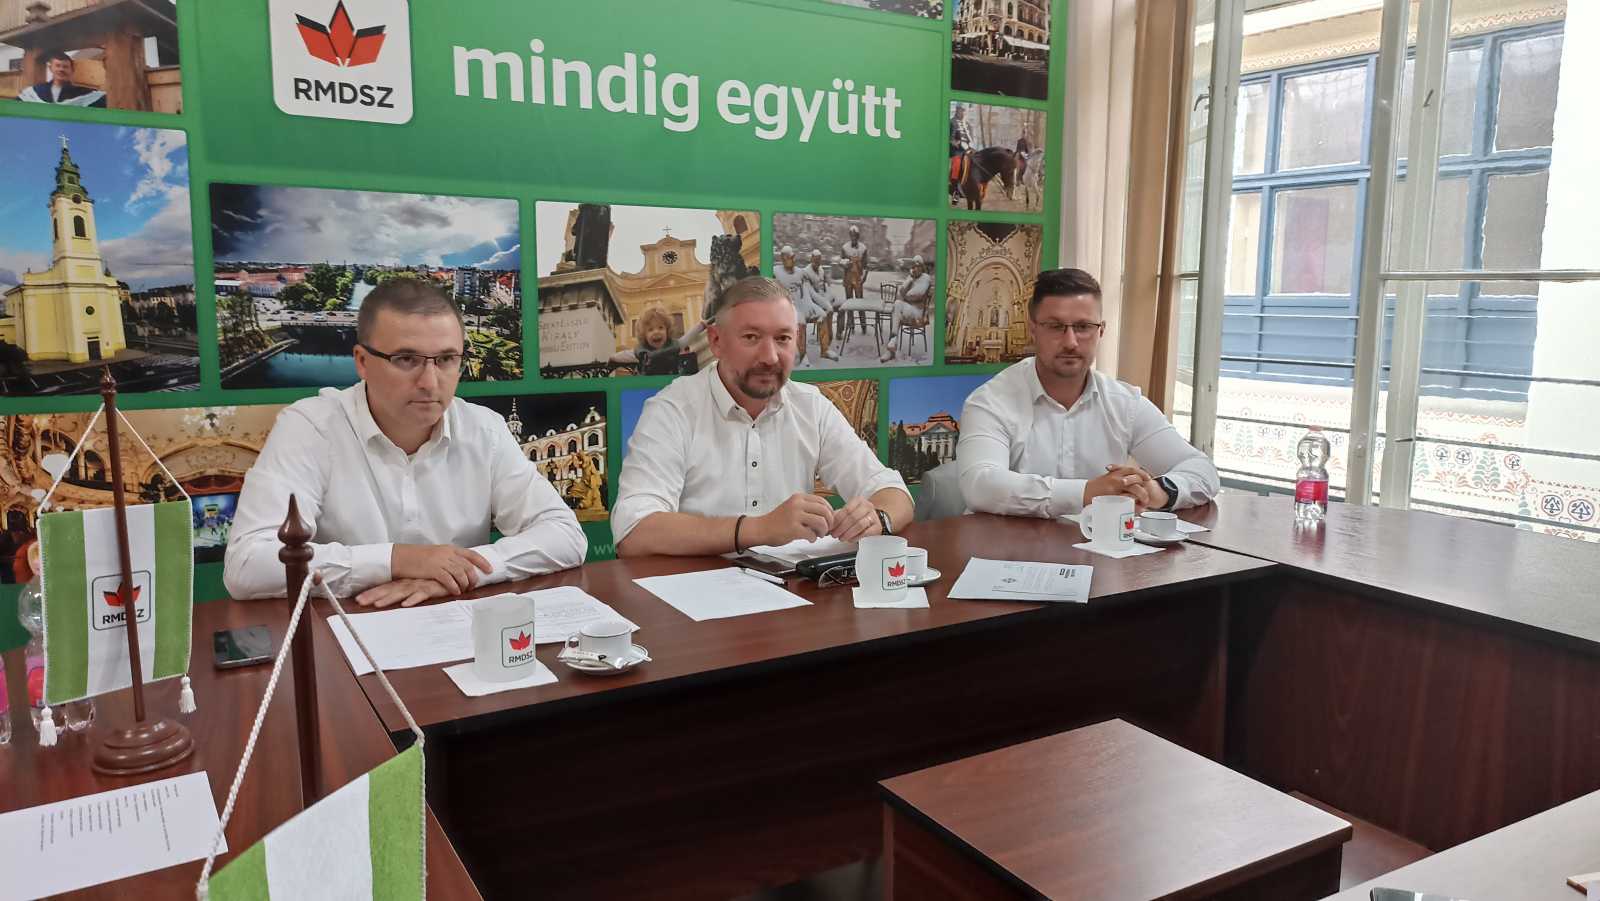 Szabó Jószef, Borsi Imre Lóránt és Demián Zsolt ismertették az idei programot | Fotó: A szerző felvétele